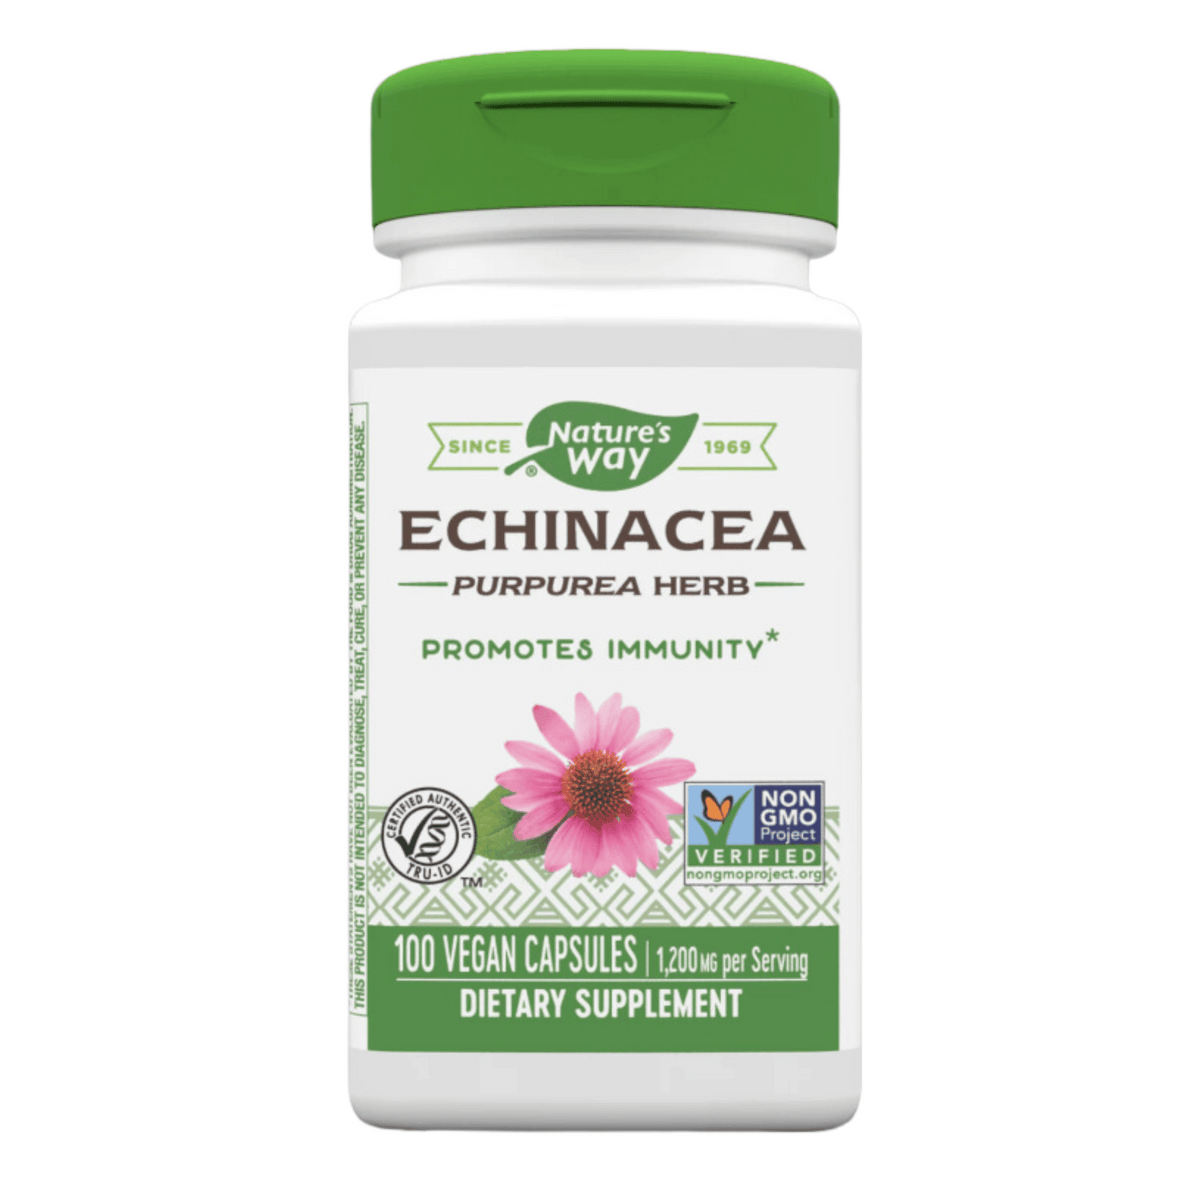 Primary Image of Echinacea Vegan Capsules